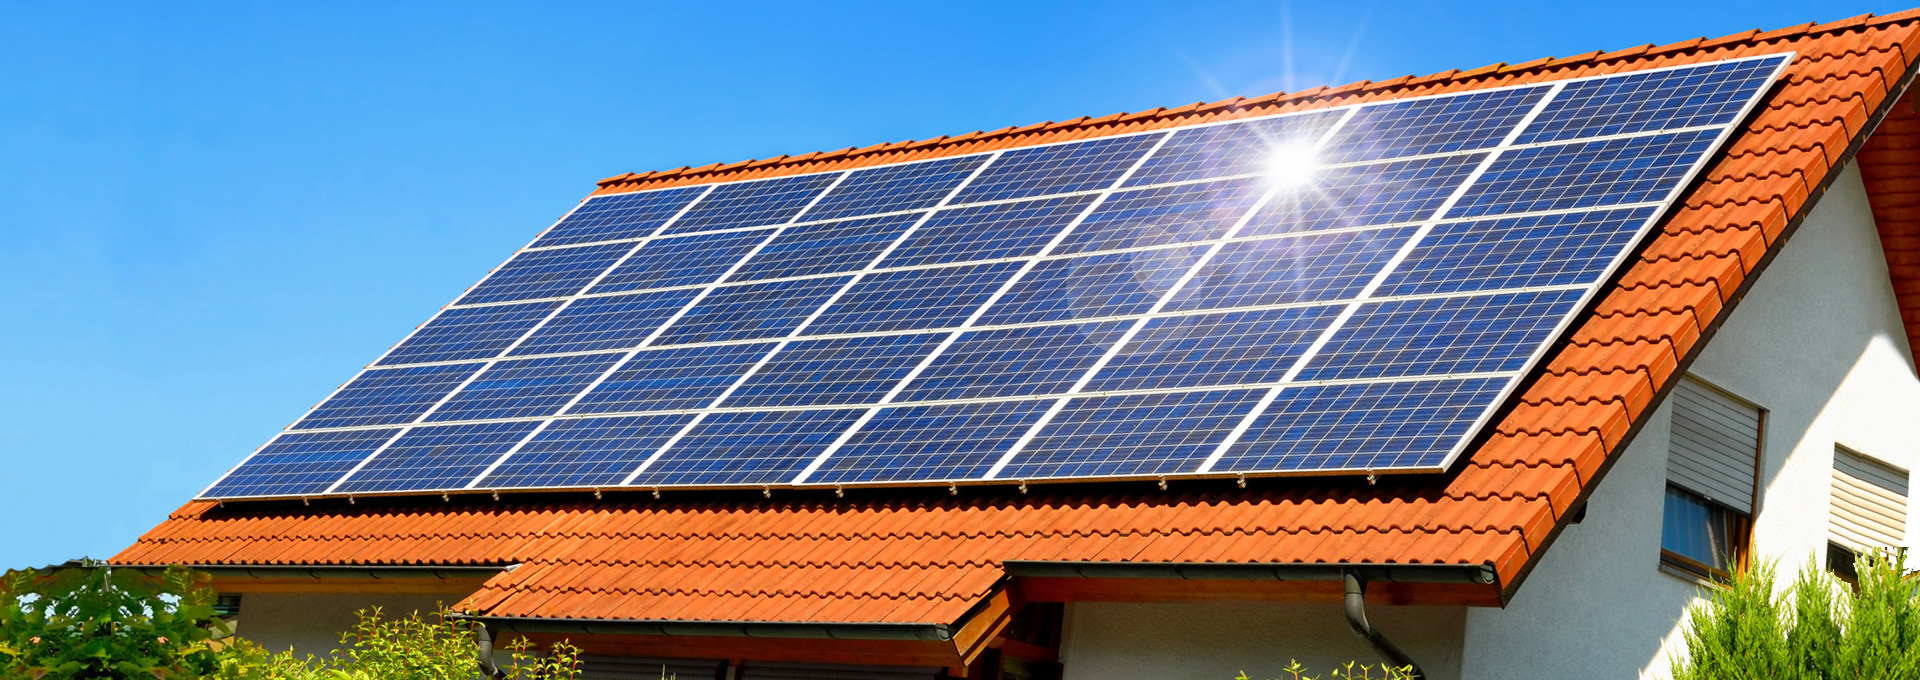 Impianto Fotovoltaico Clima Plus Service Impianti Termici E